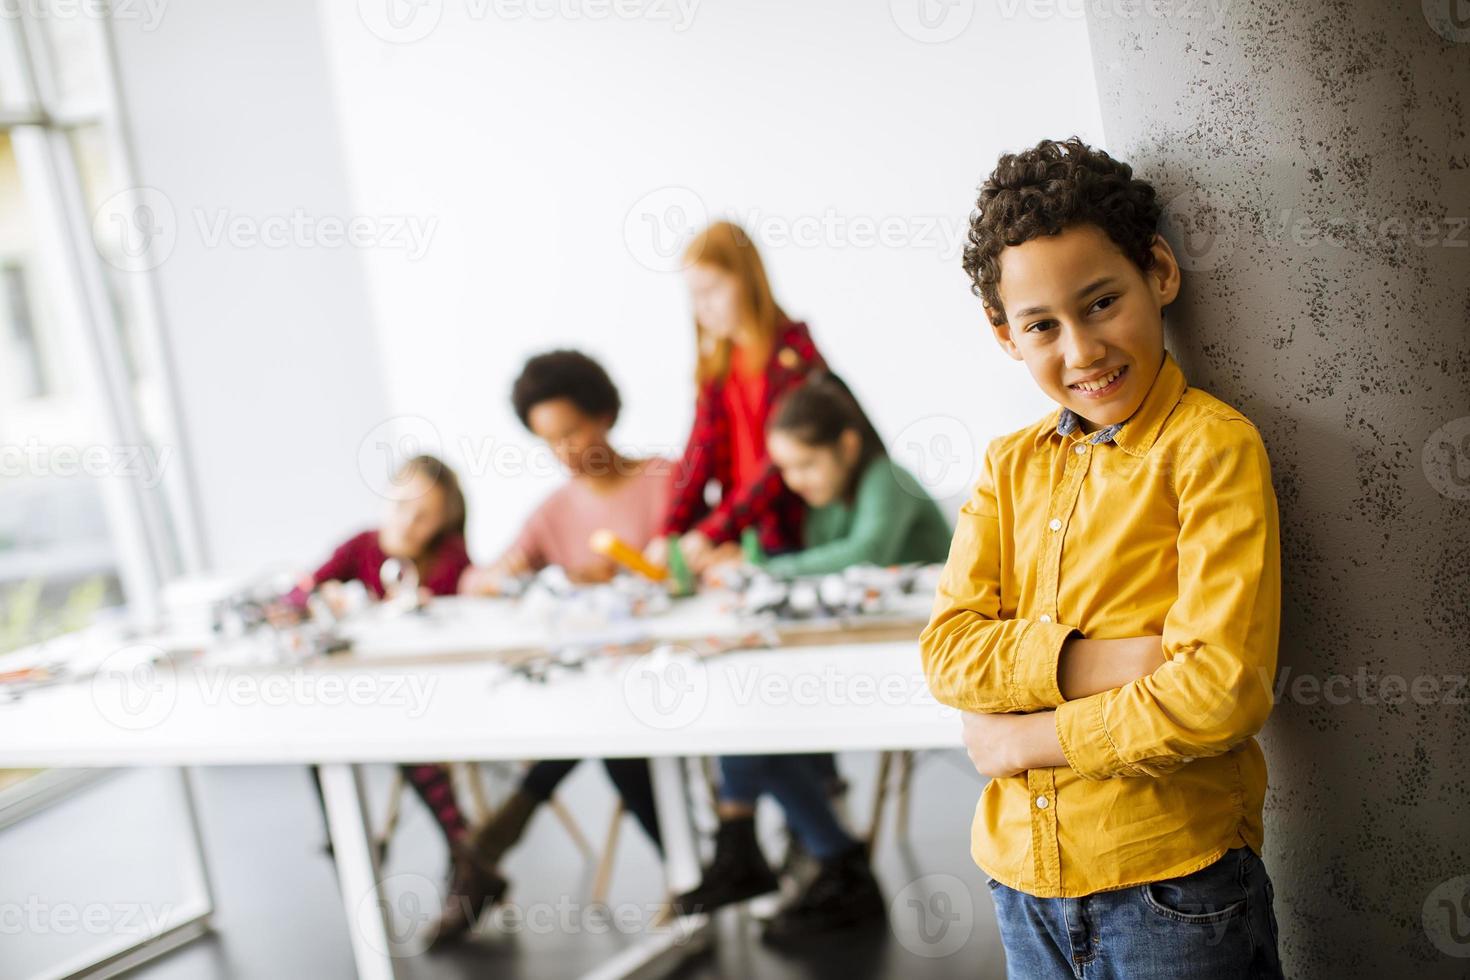 Mignon petit garçon debout devant les enfants de la programmation de jouets électriques et de robots en classe de robotique photo